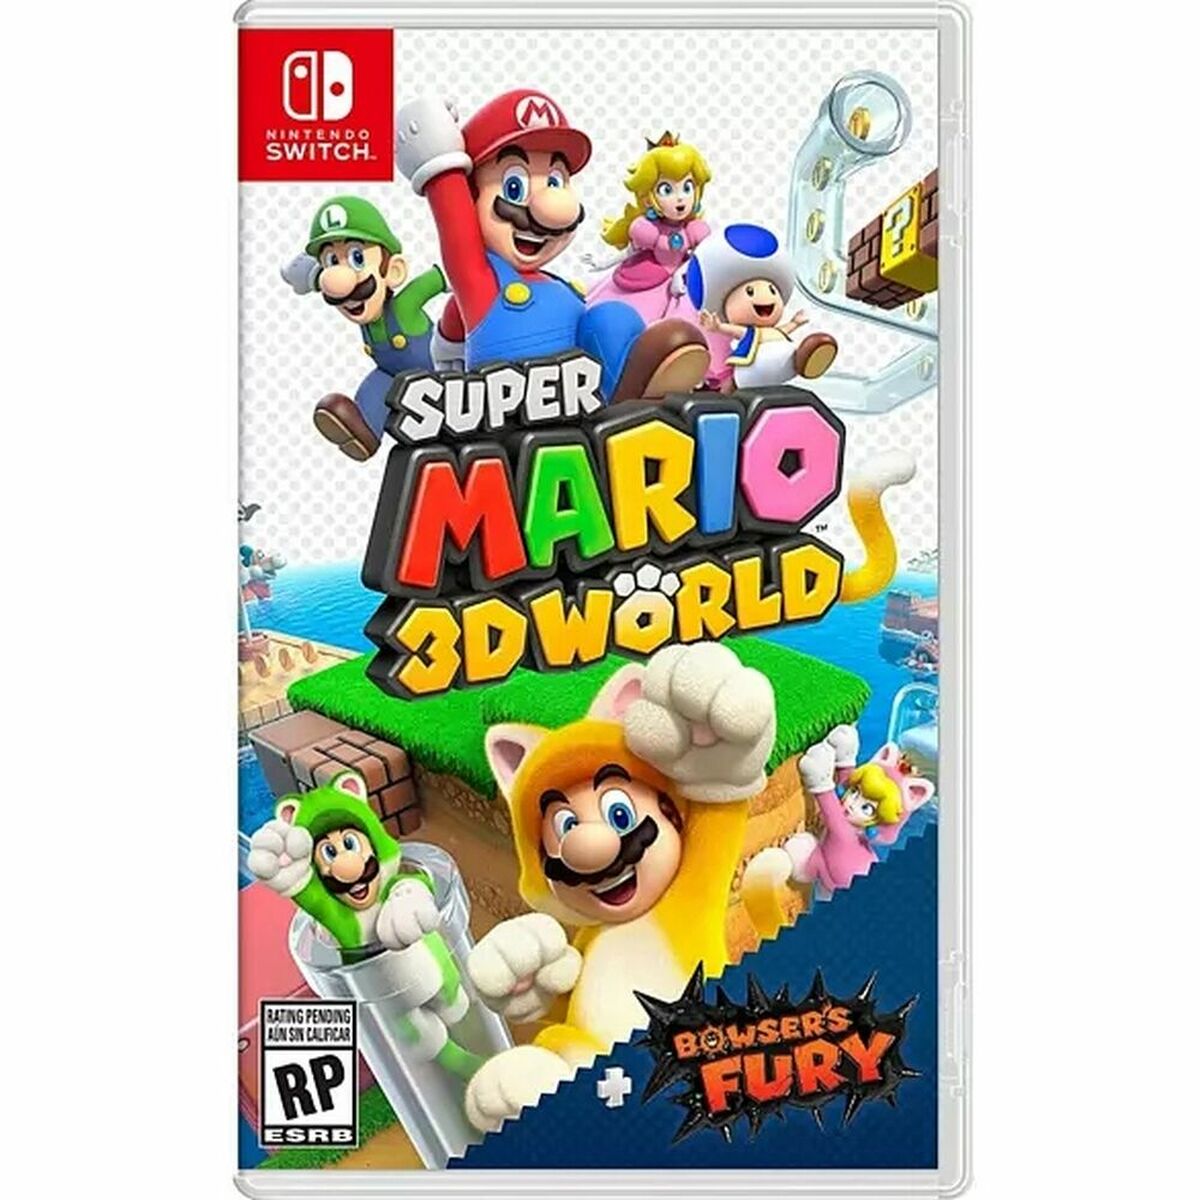 Jeu vidéo pour Switch Nintendo Super Mario 3D World + Bowser’s Fury